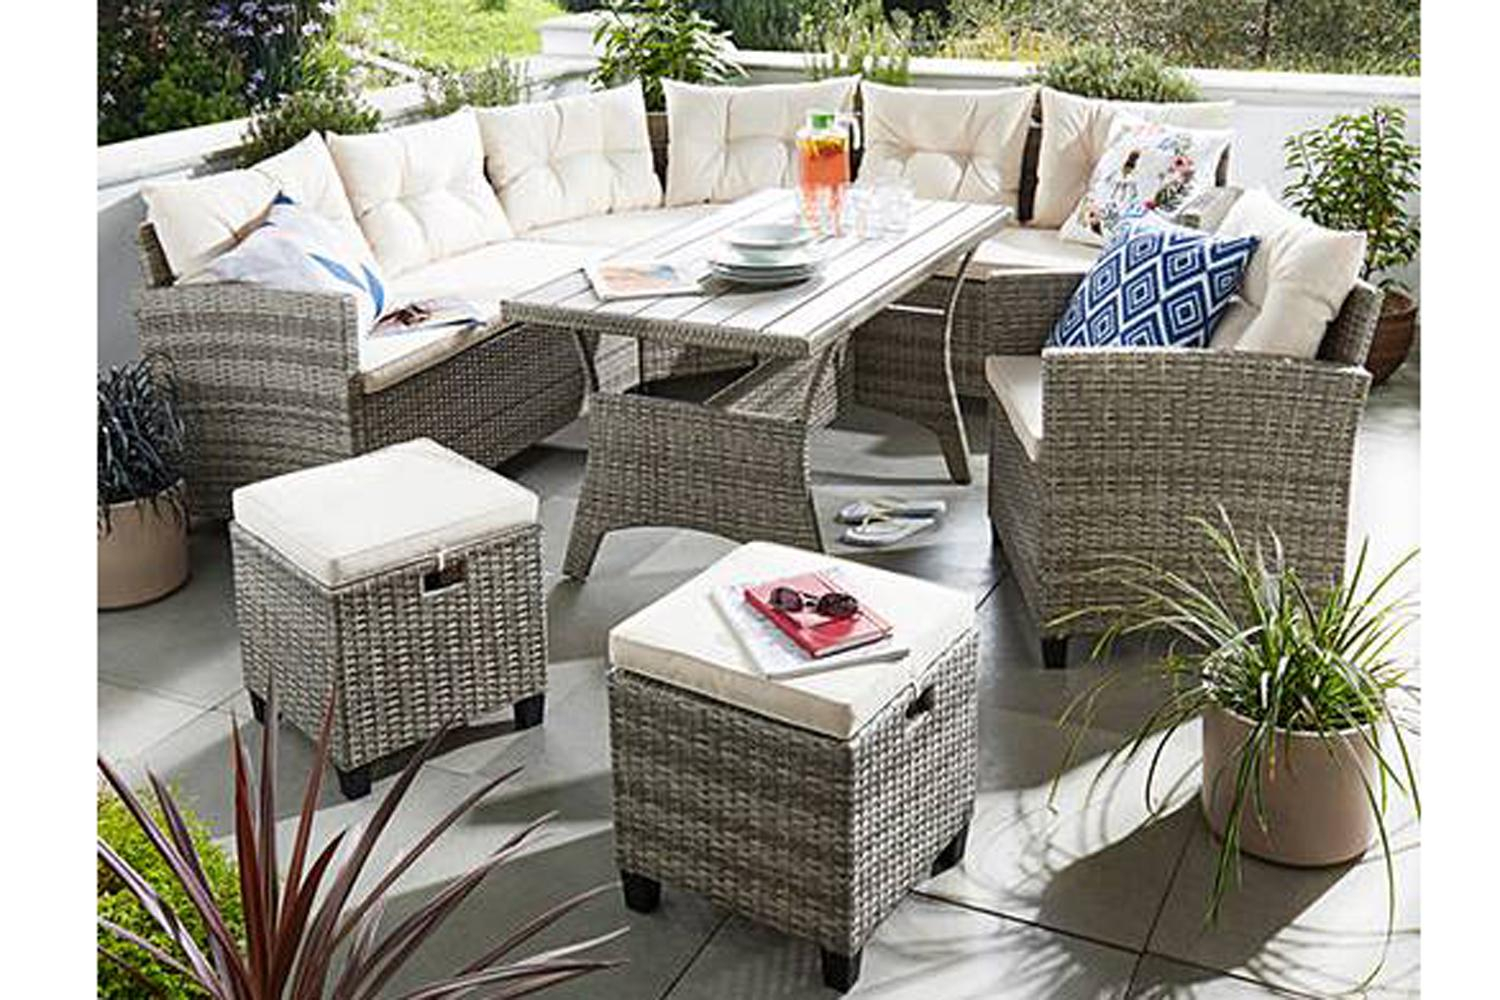 Best Rattan Garden Furniture 2019 London Evening Standard throughout proportions 1500 X 1000